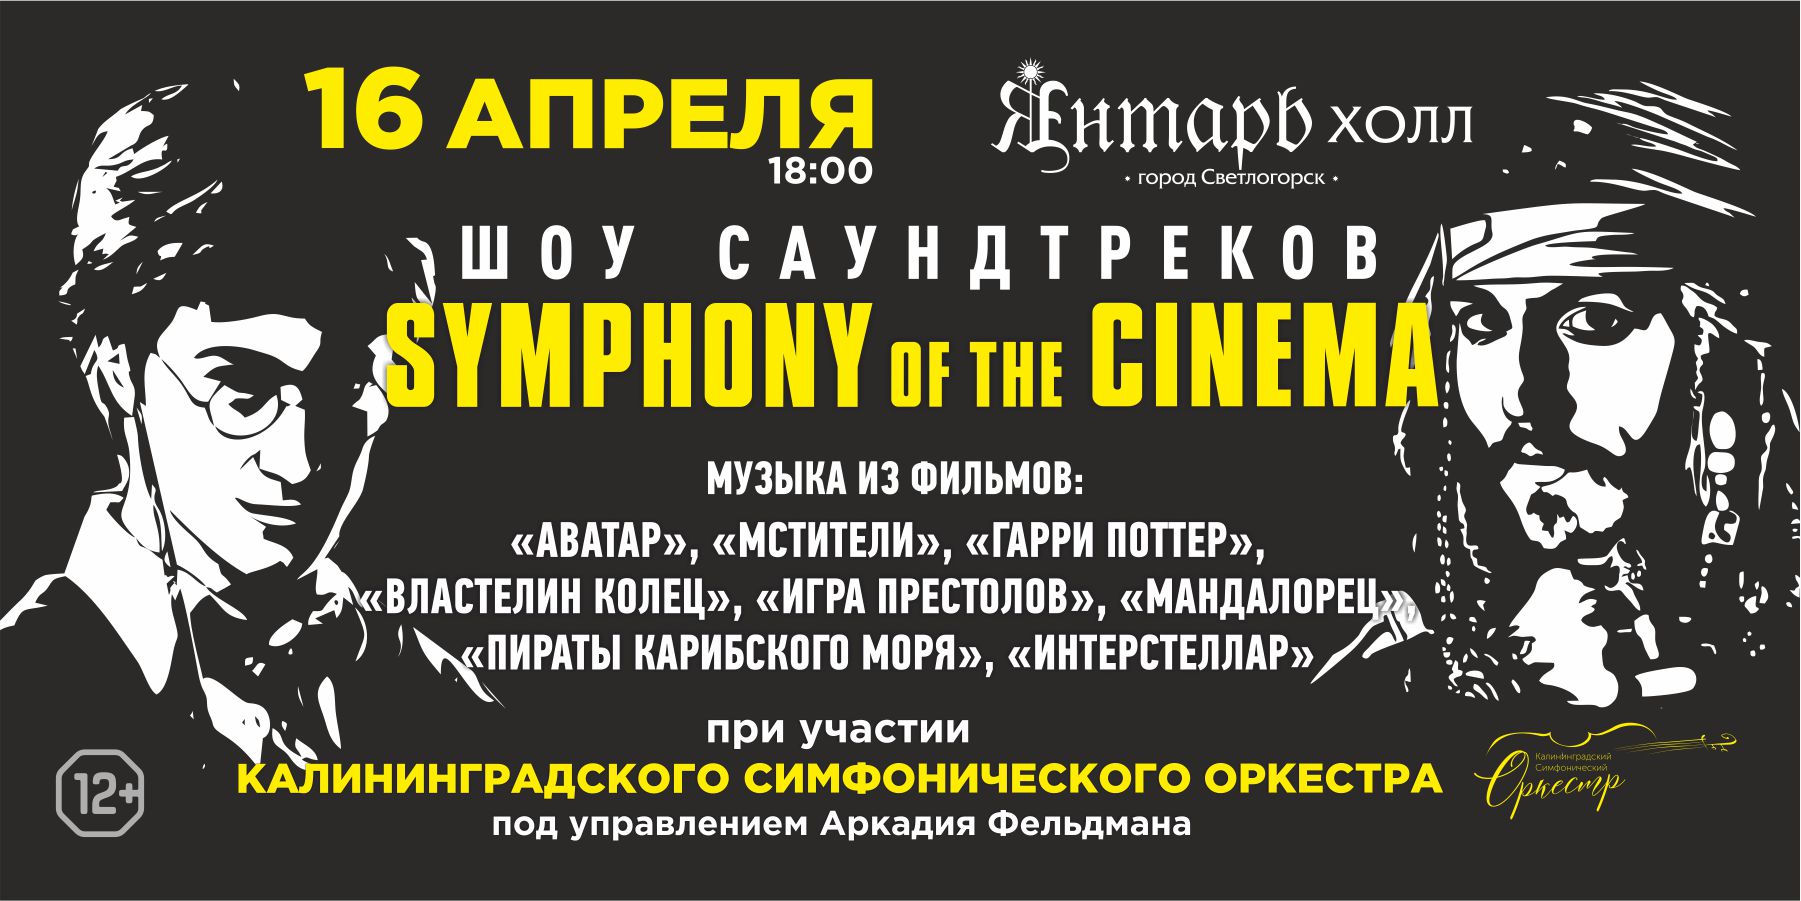 Symphony of the Cinema Шоу саундтреков с симфоническим оркестром